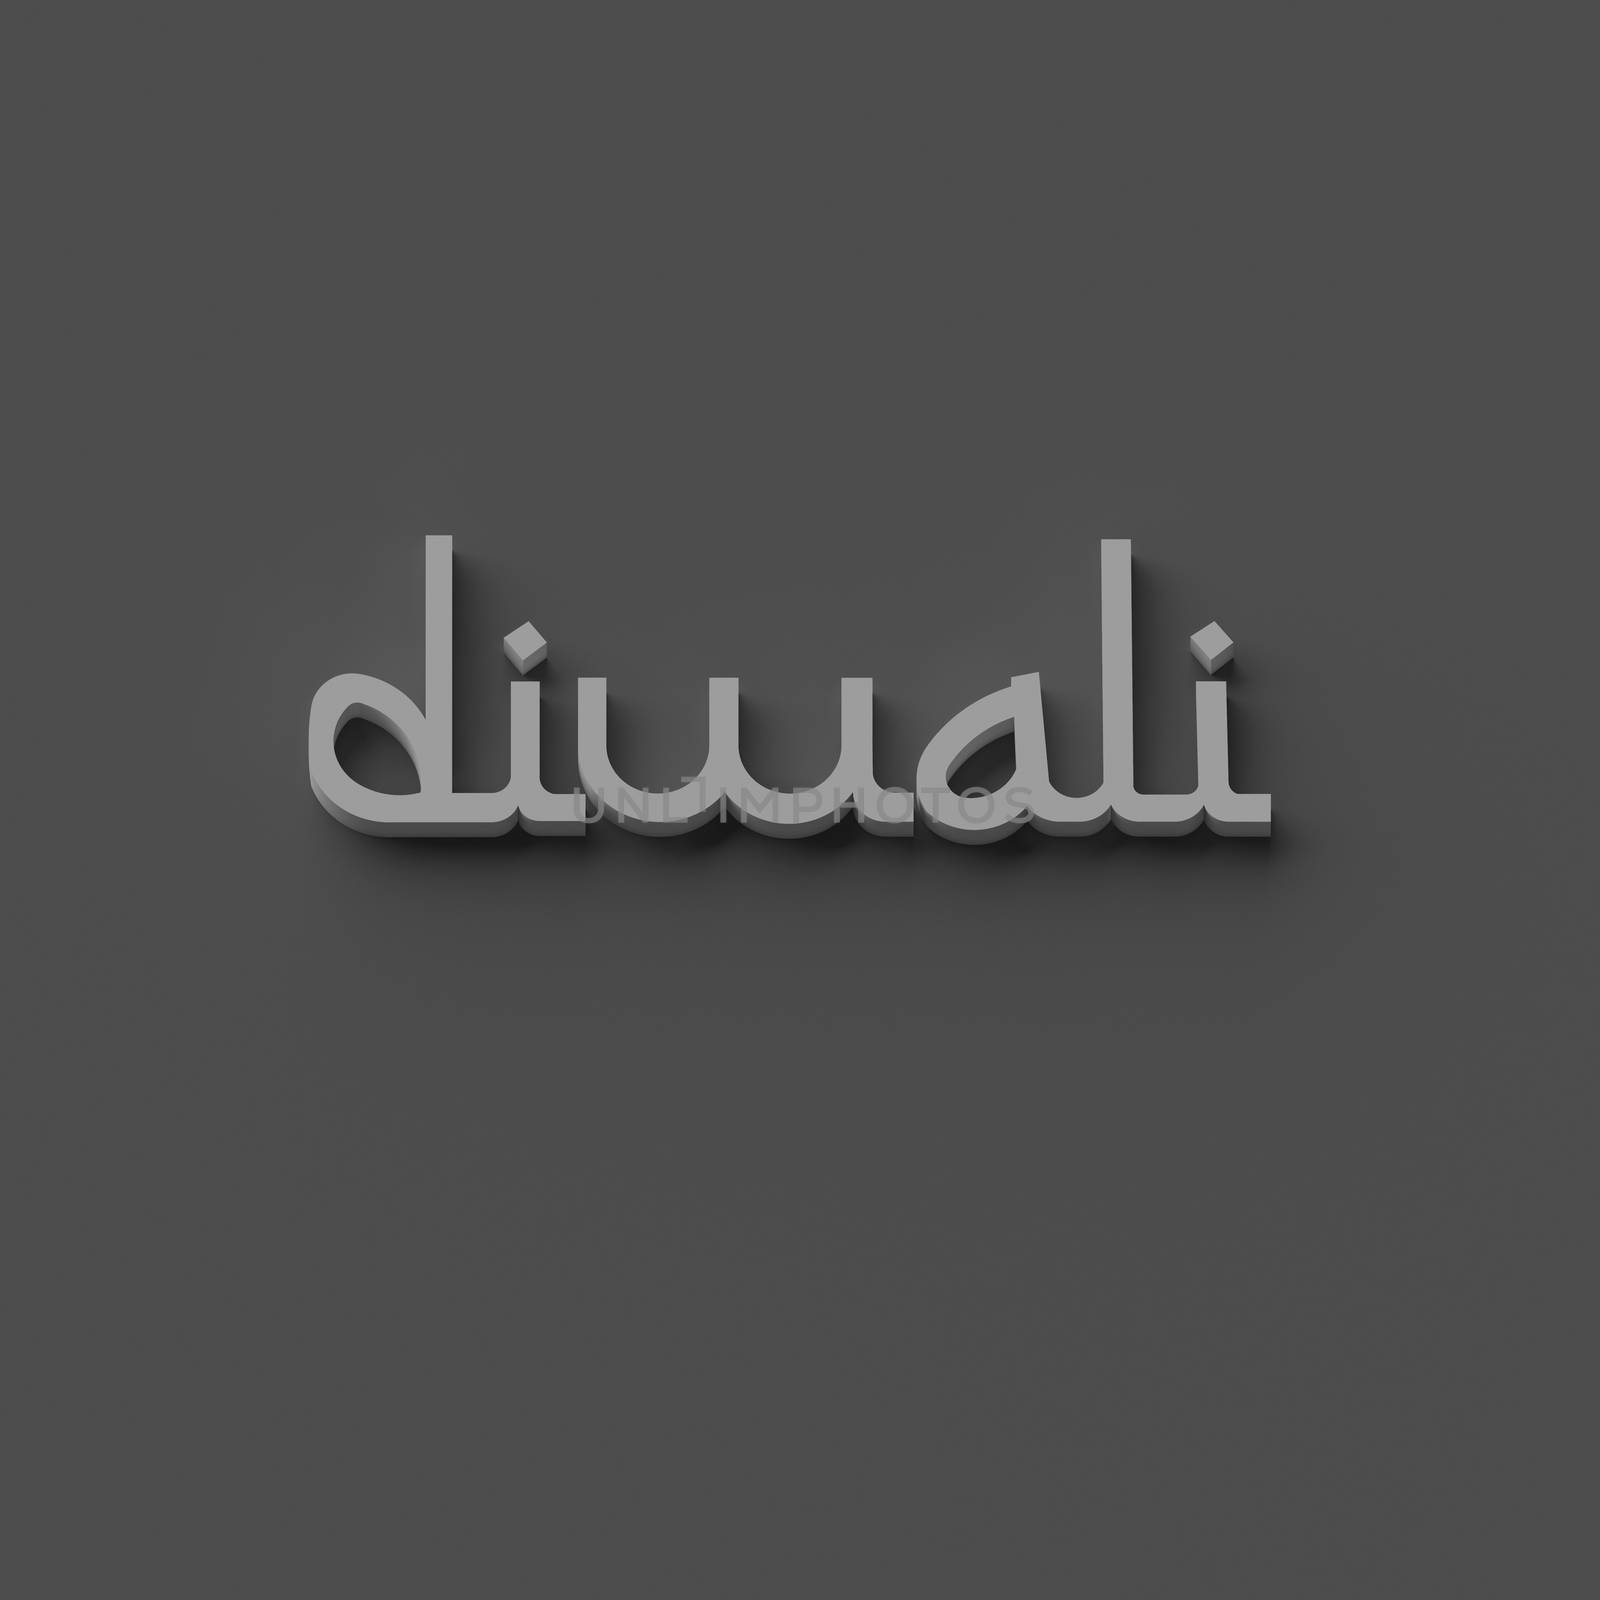 3D RENDERING WORDS 'diwali' by PrettyTG